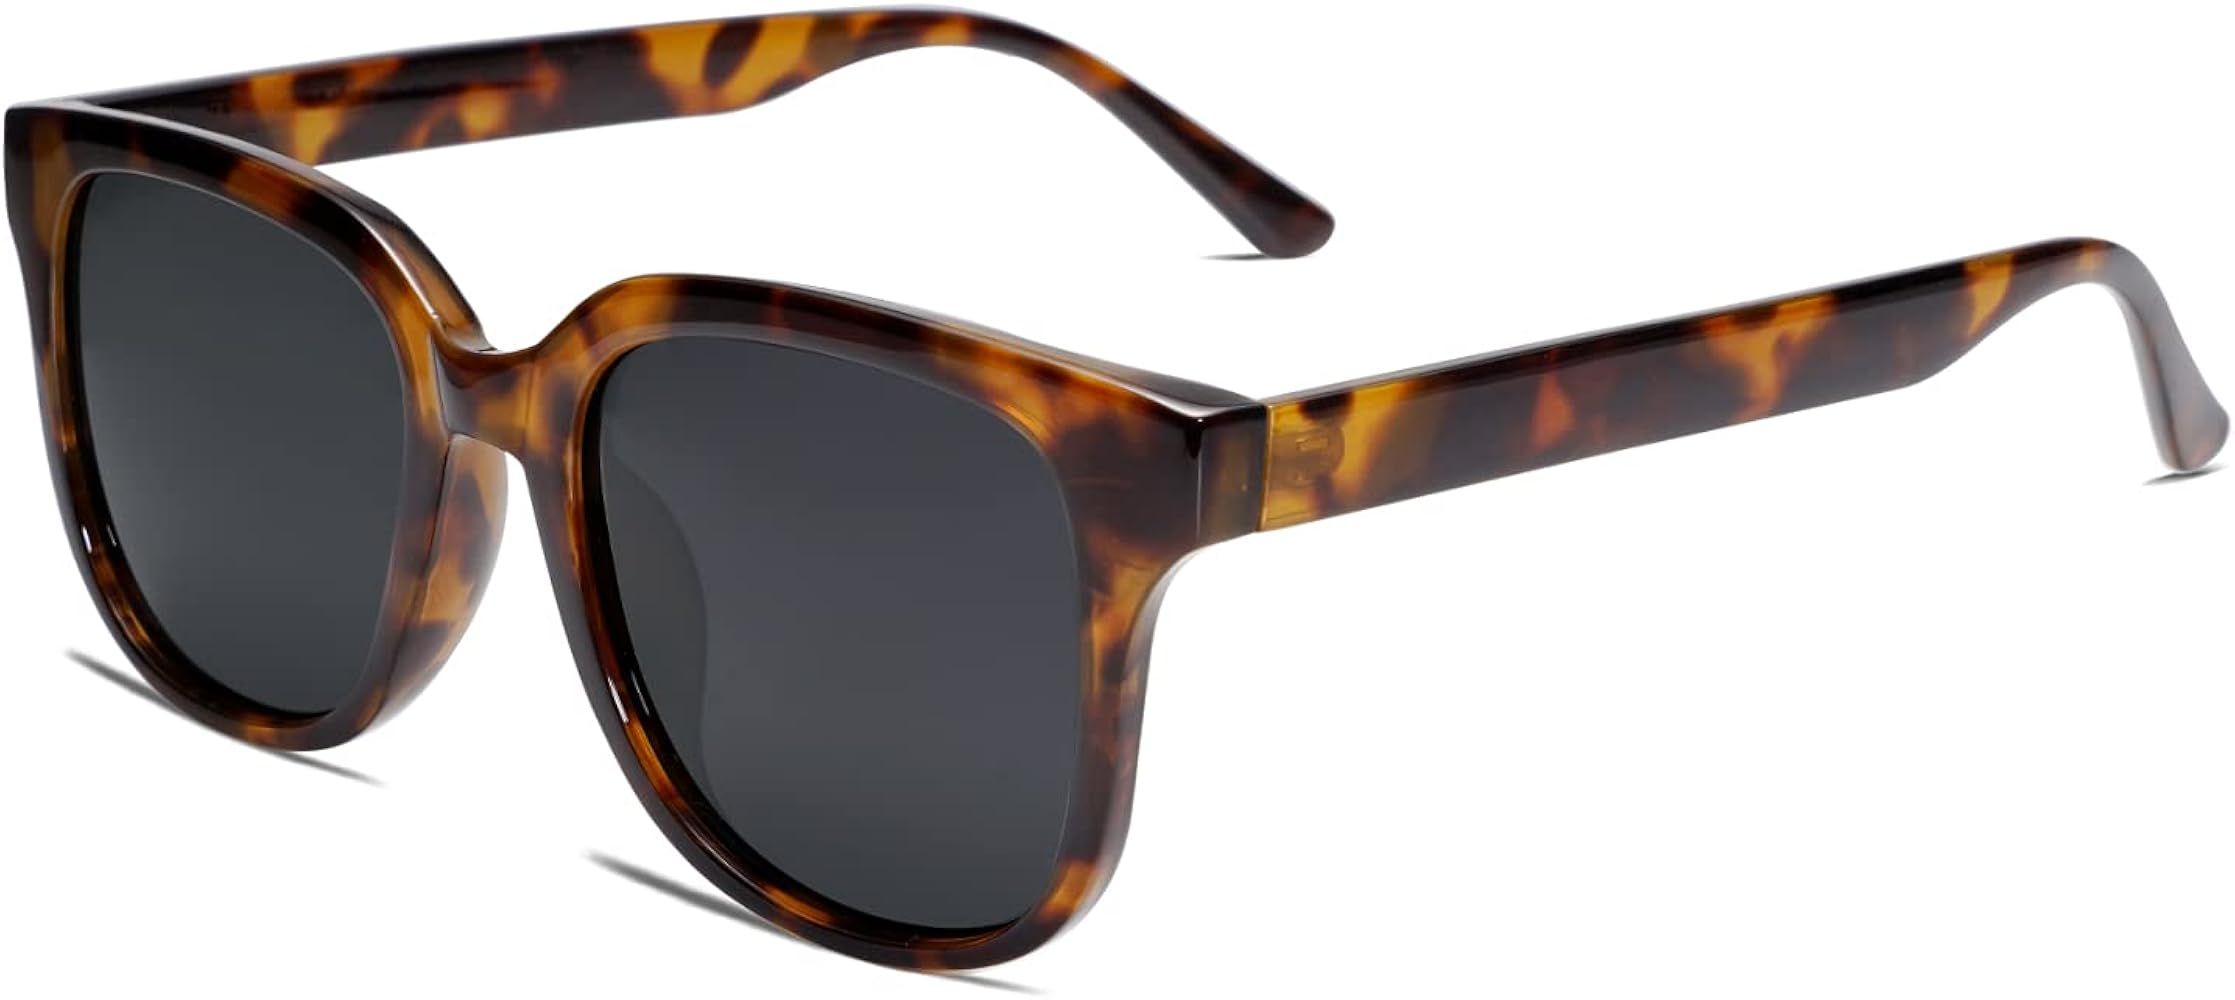 VANLINKER Polarized Oversized Square Sunglasses For Women Men VL9592 | Amazon (US)